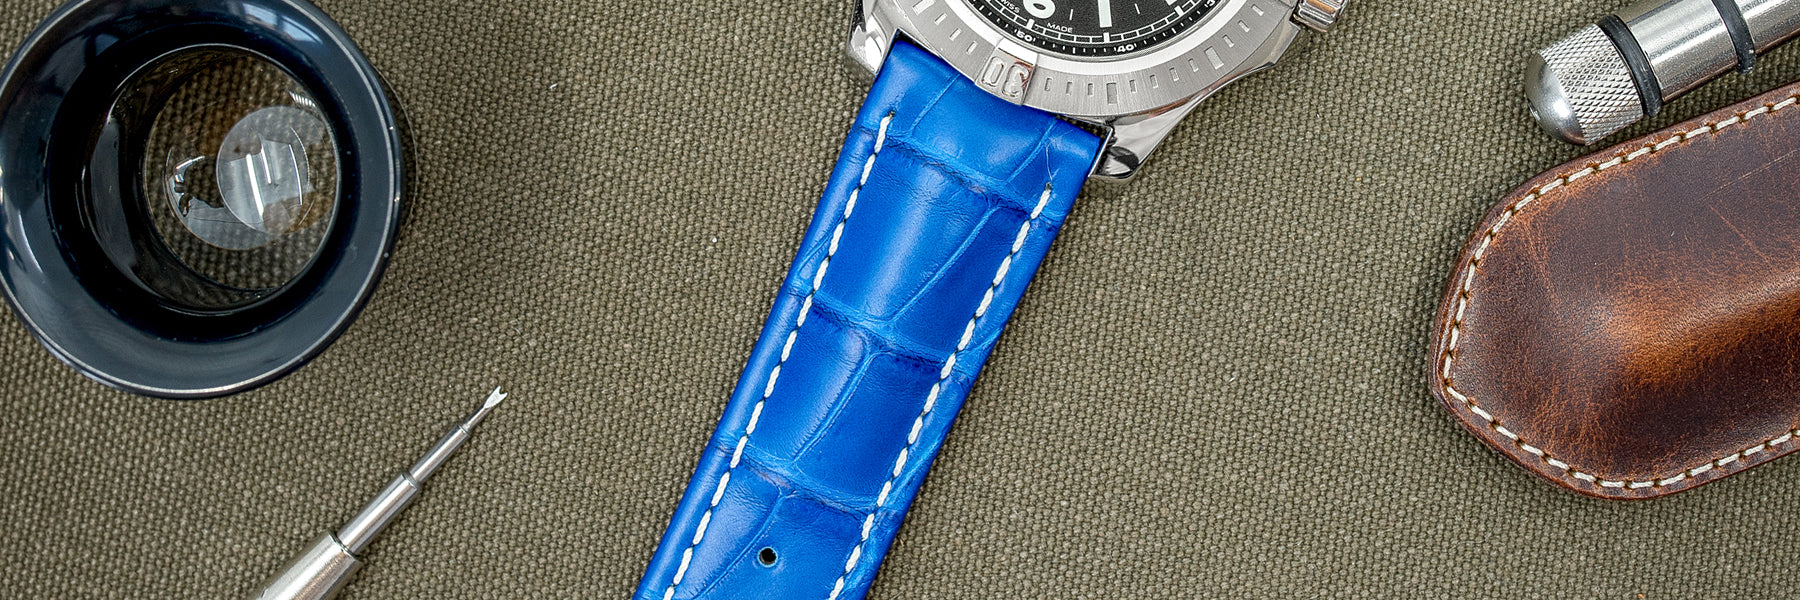 Royal Blue Watch Straps